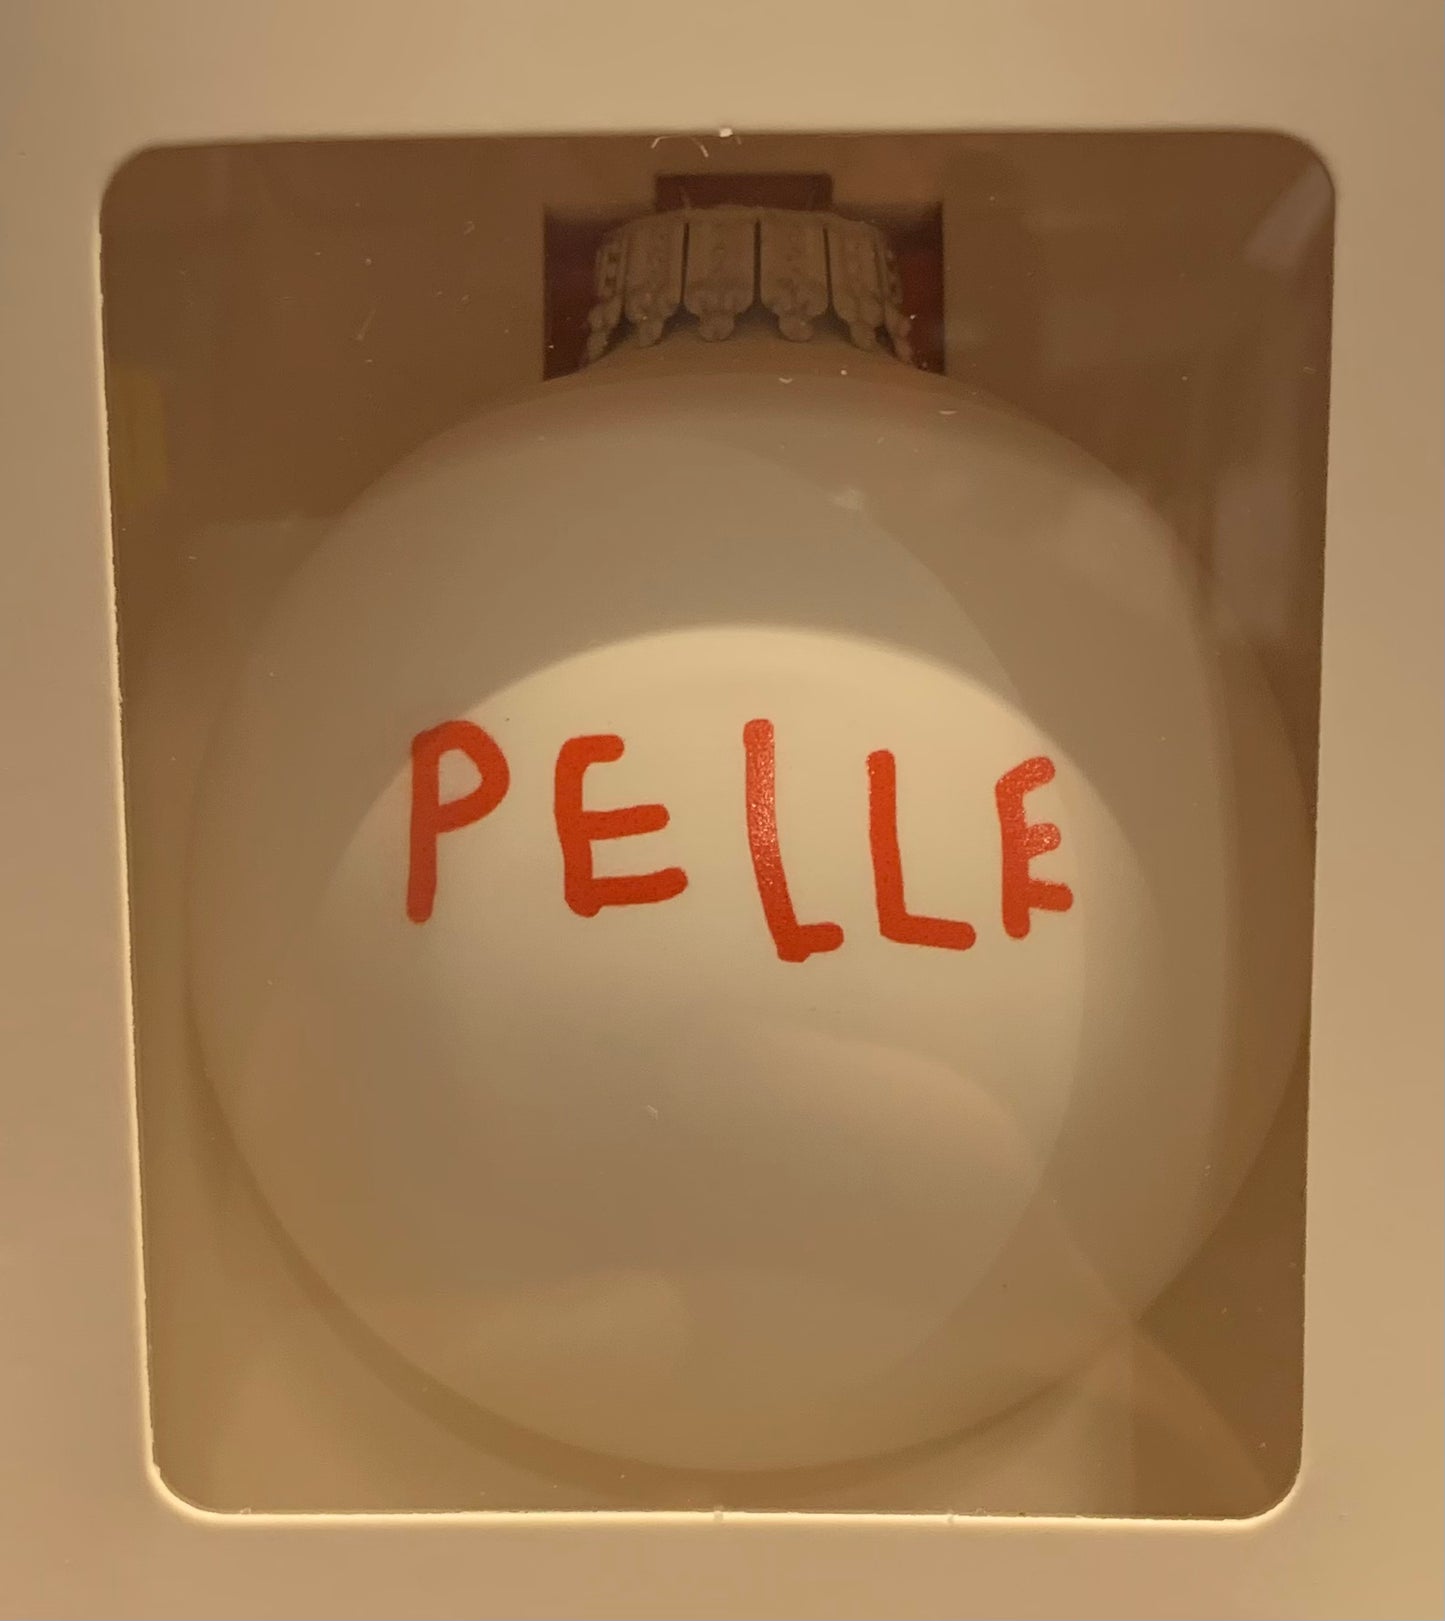 JULEKUGLE - PELLE Pelle